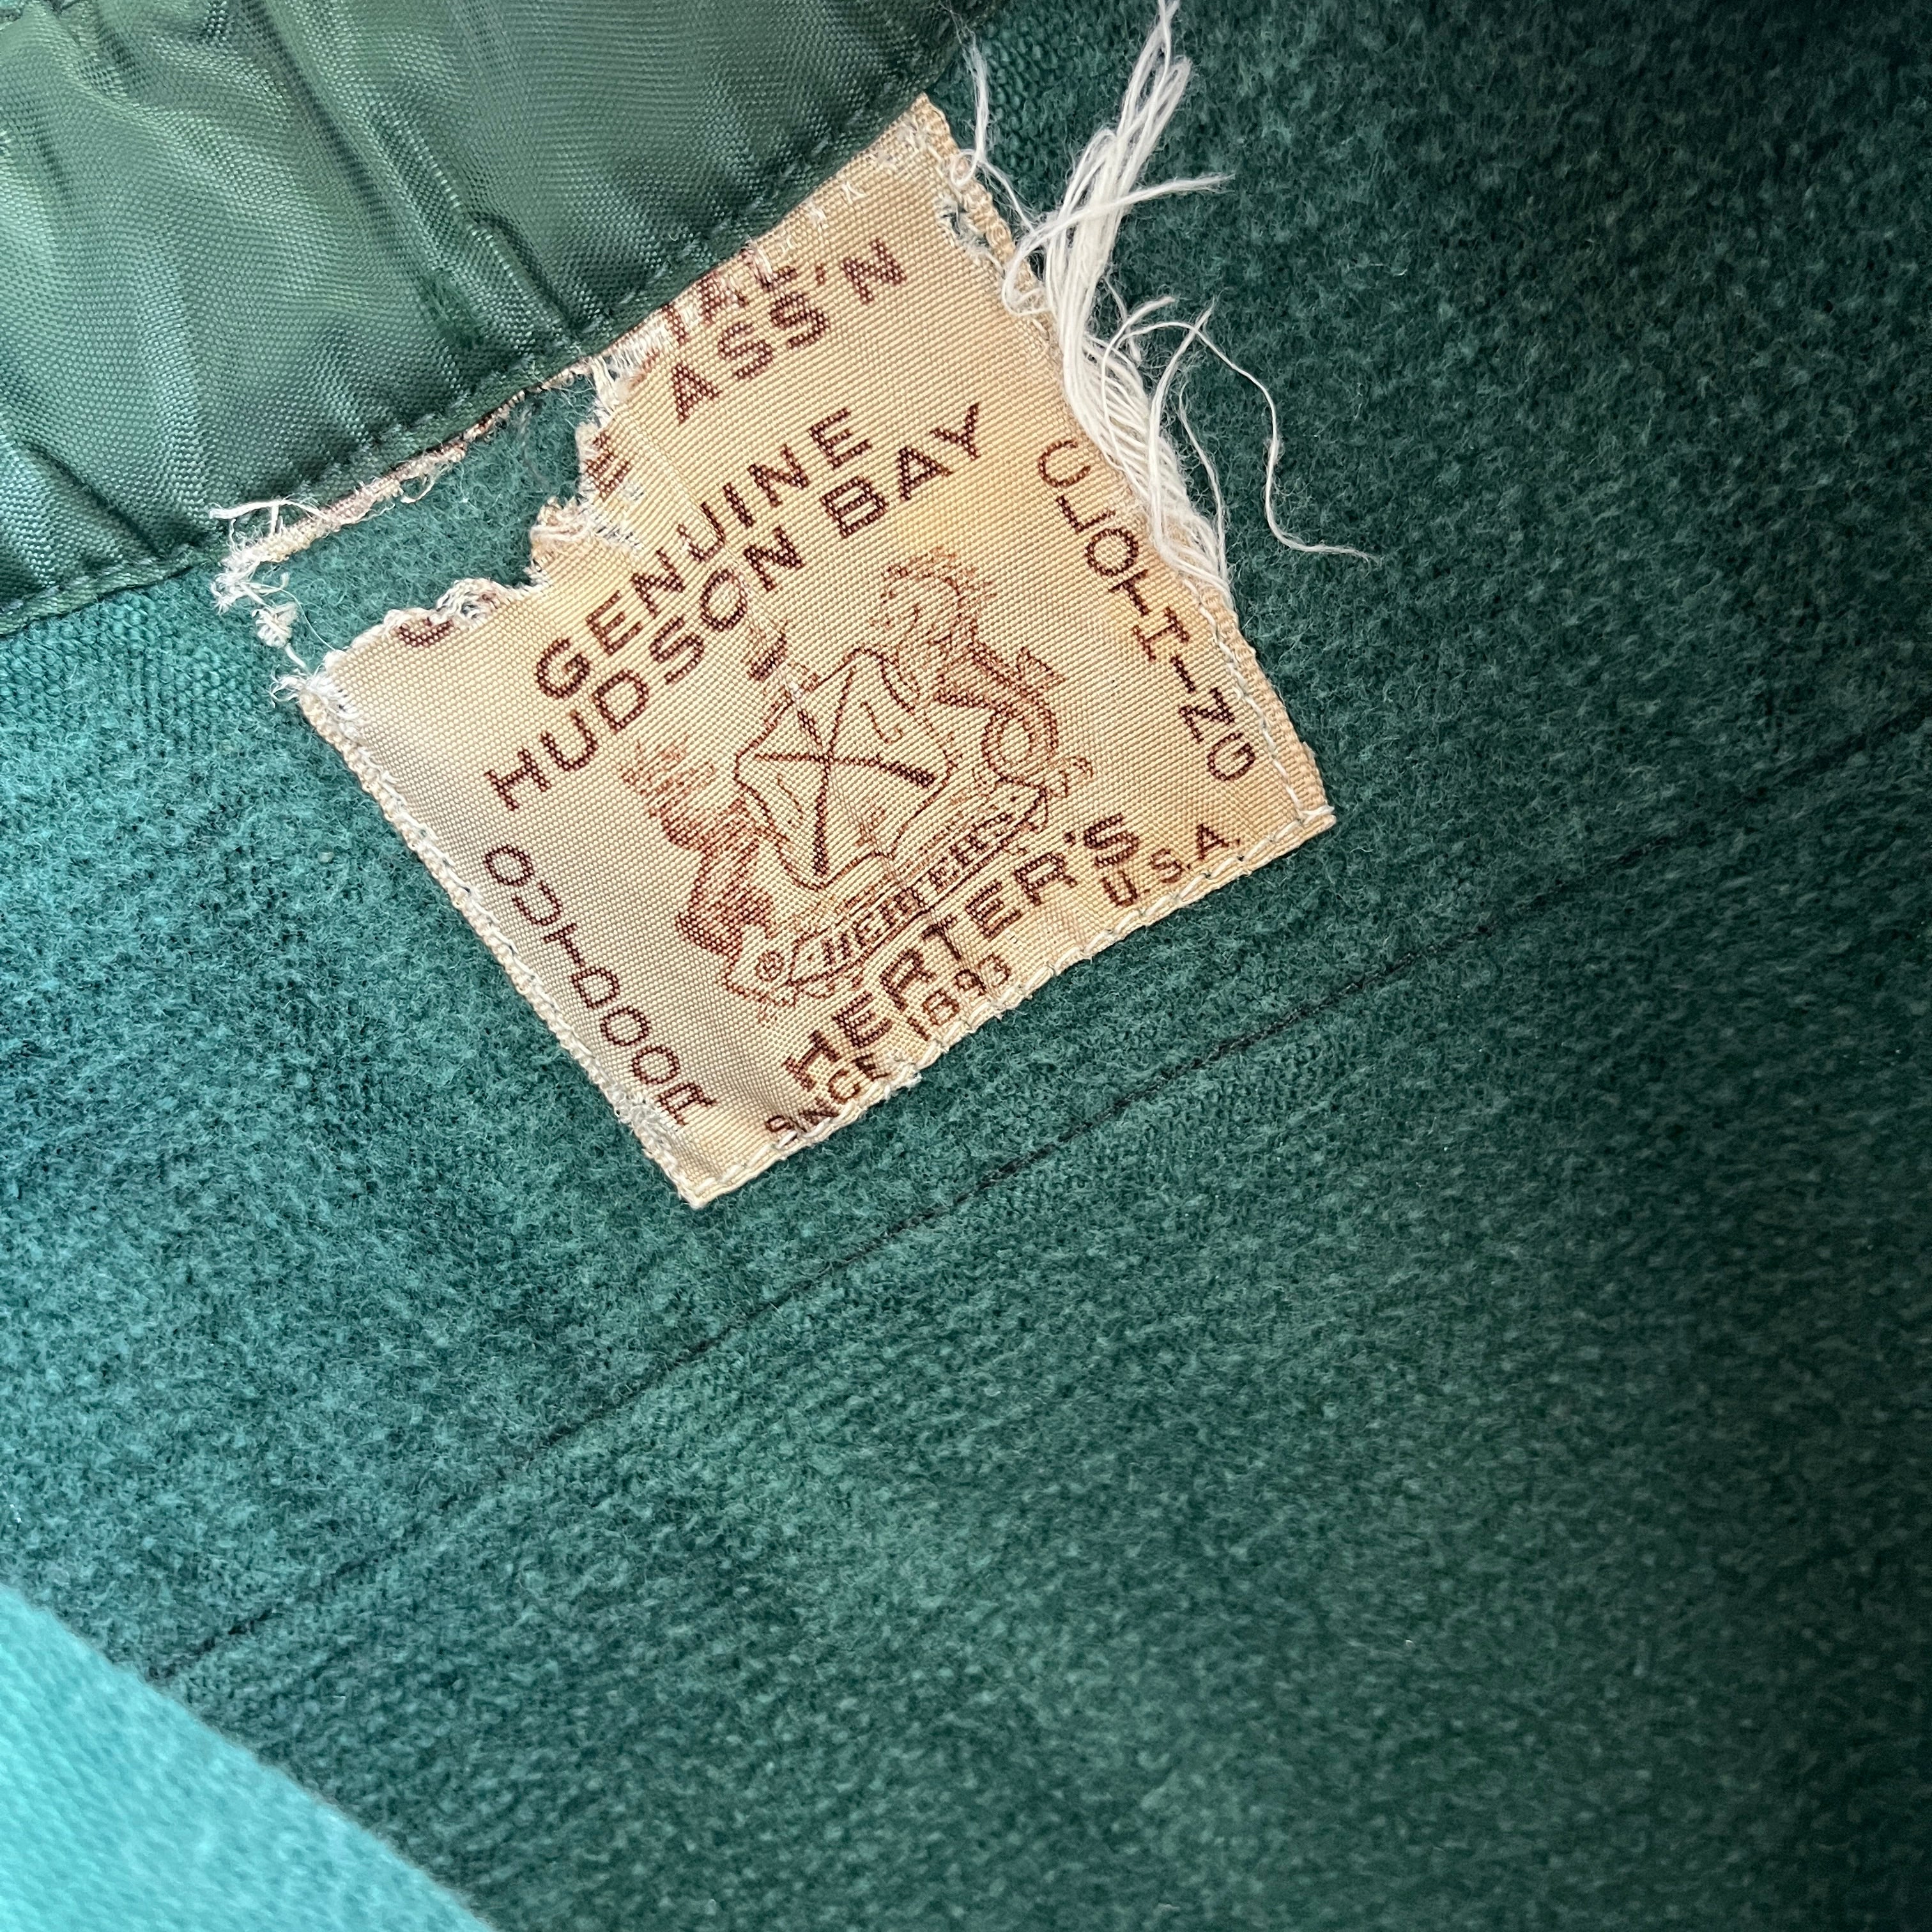 Flanelle de coton vert chasseur de poids moyen de la baie d'Hudson originale des années 1950/60 - à collectionner !